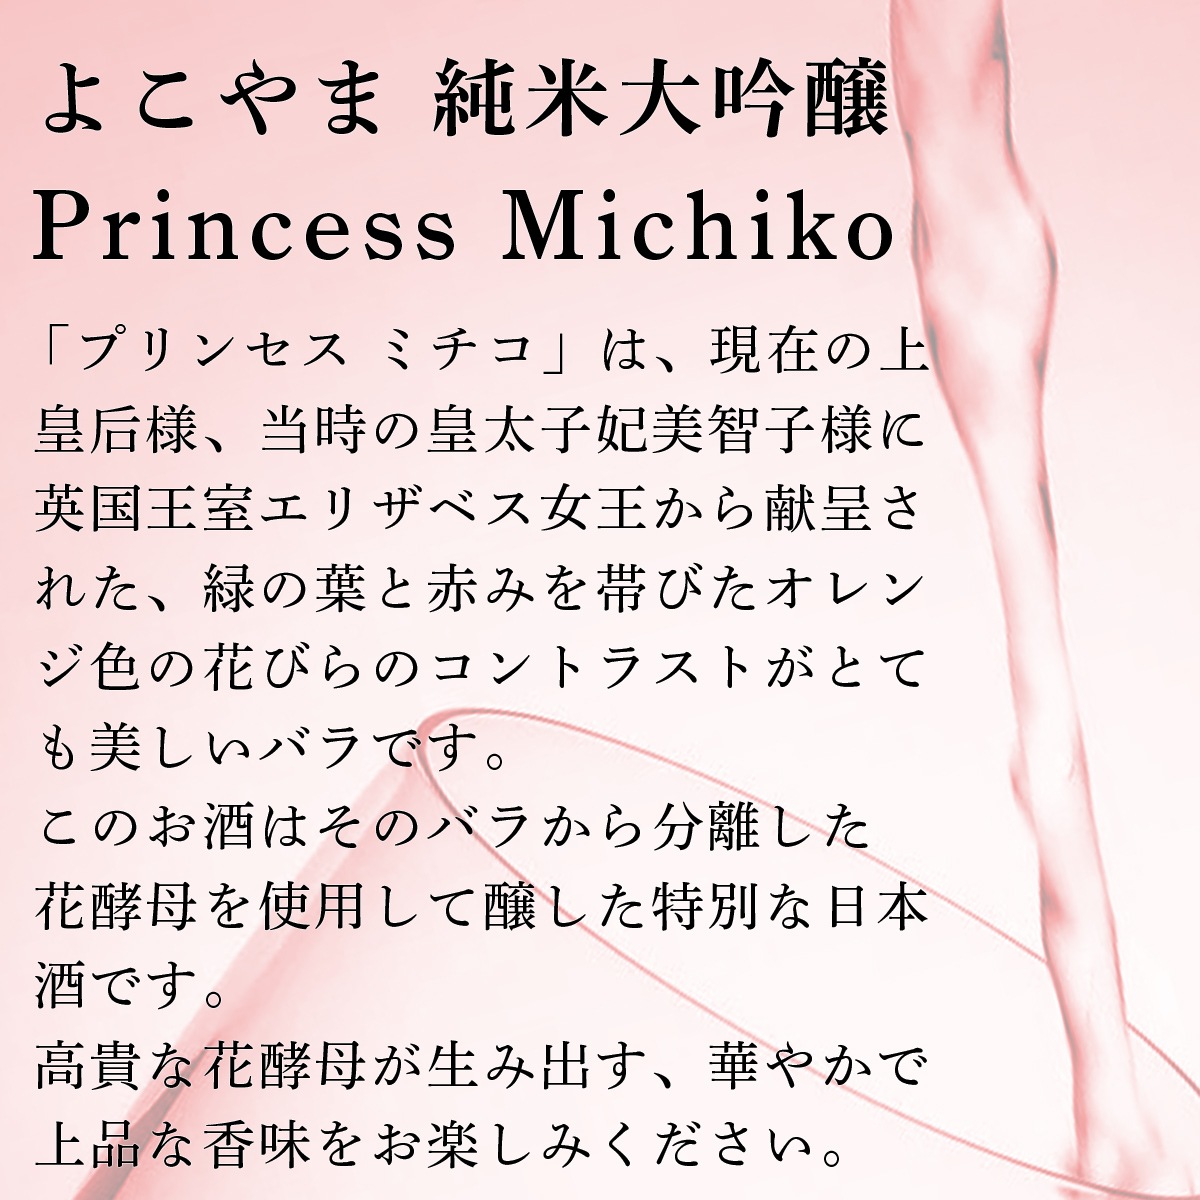 よこやま 純米大吟醸 Princess Michiko プリンセス ミチコ バラ酵母 化粧箱付き